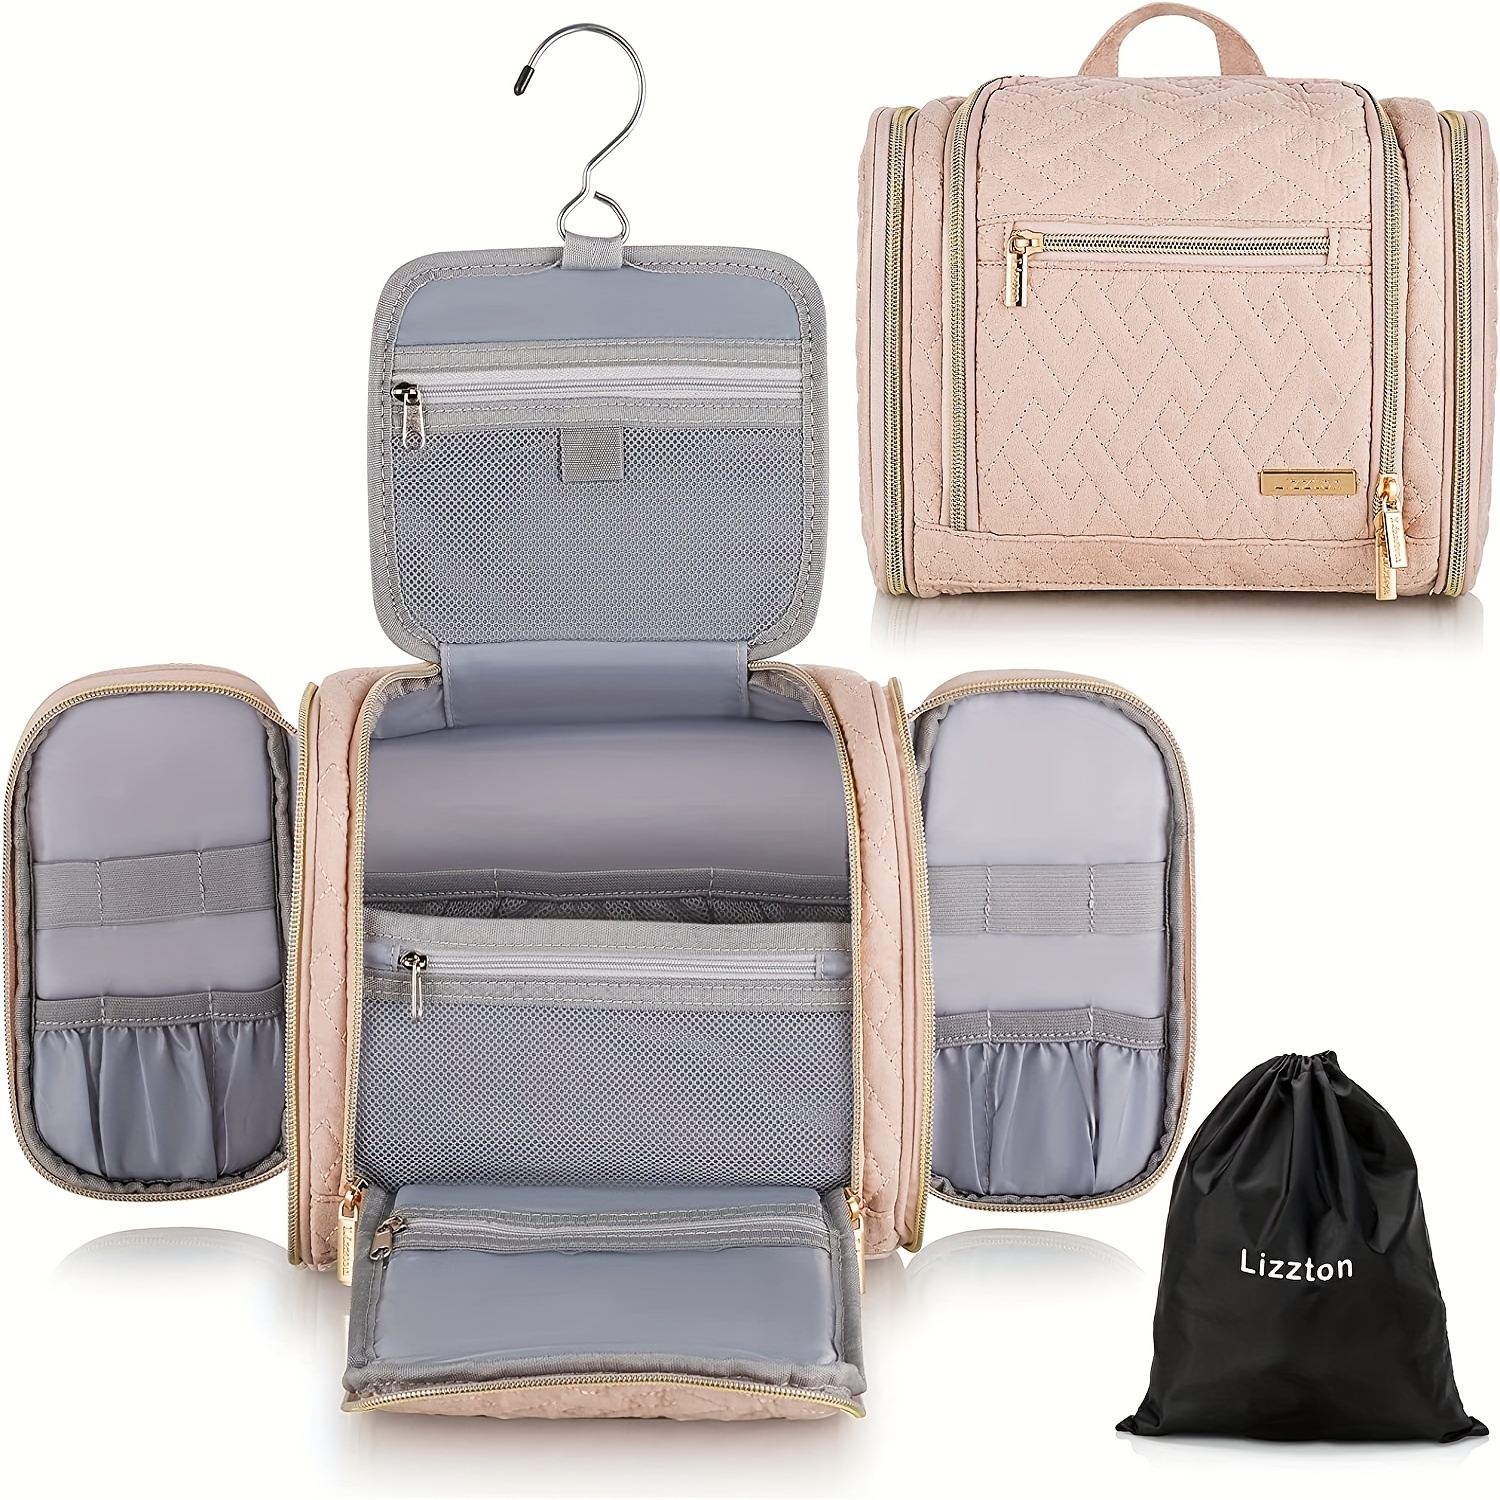  Toiletry Bag for Men,BAGSMART Travel Bag,Dopp Kit with